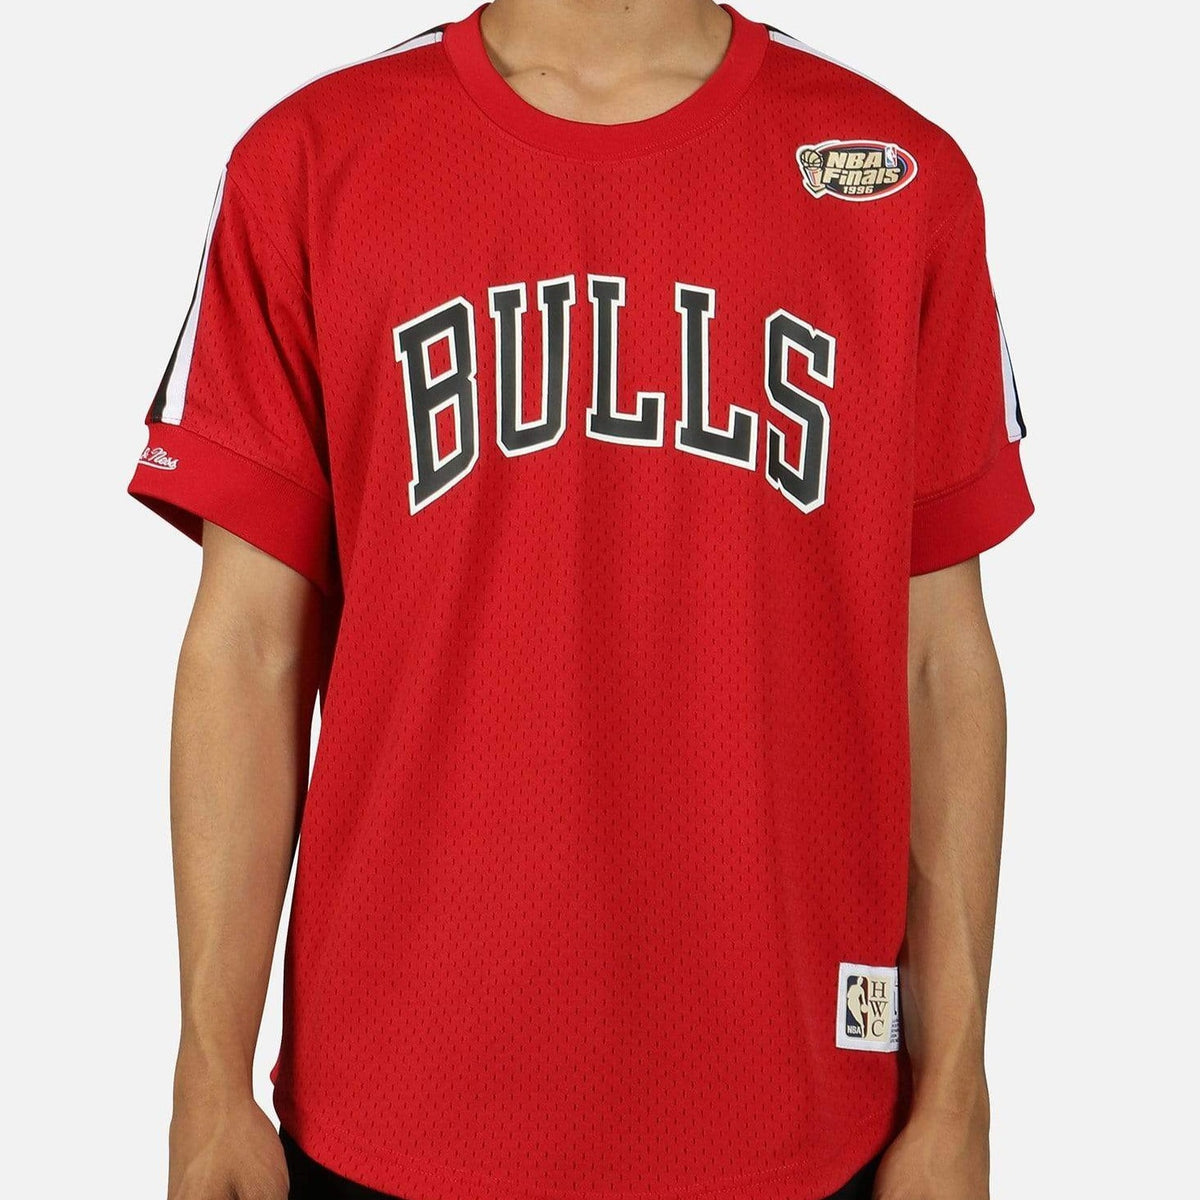 NBA Finals 1996 Chicago Bulls Mesh Jersey